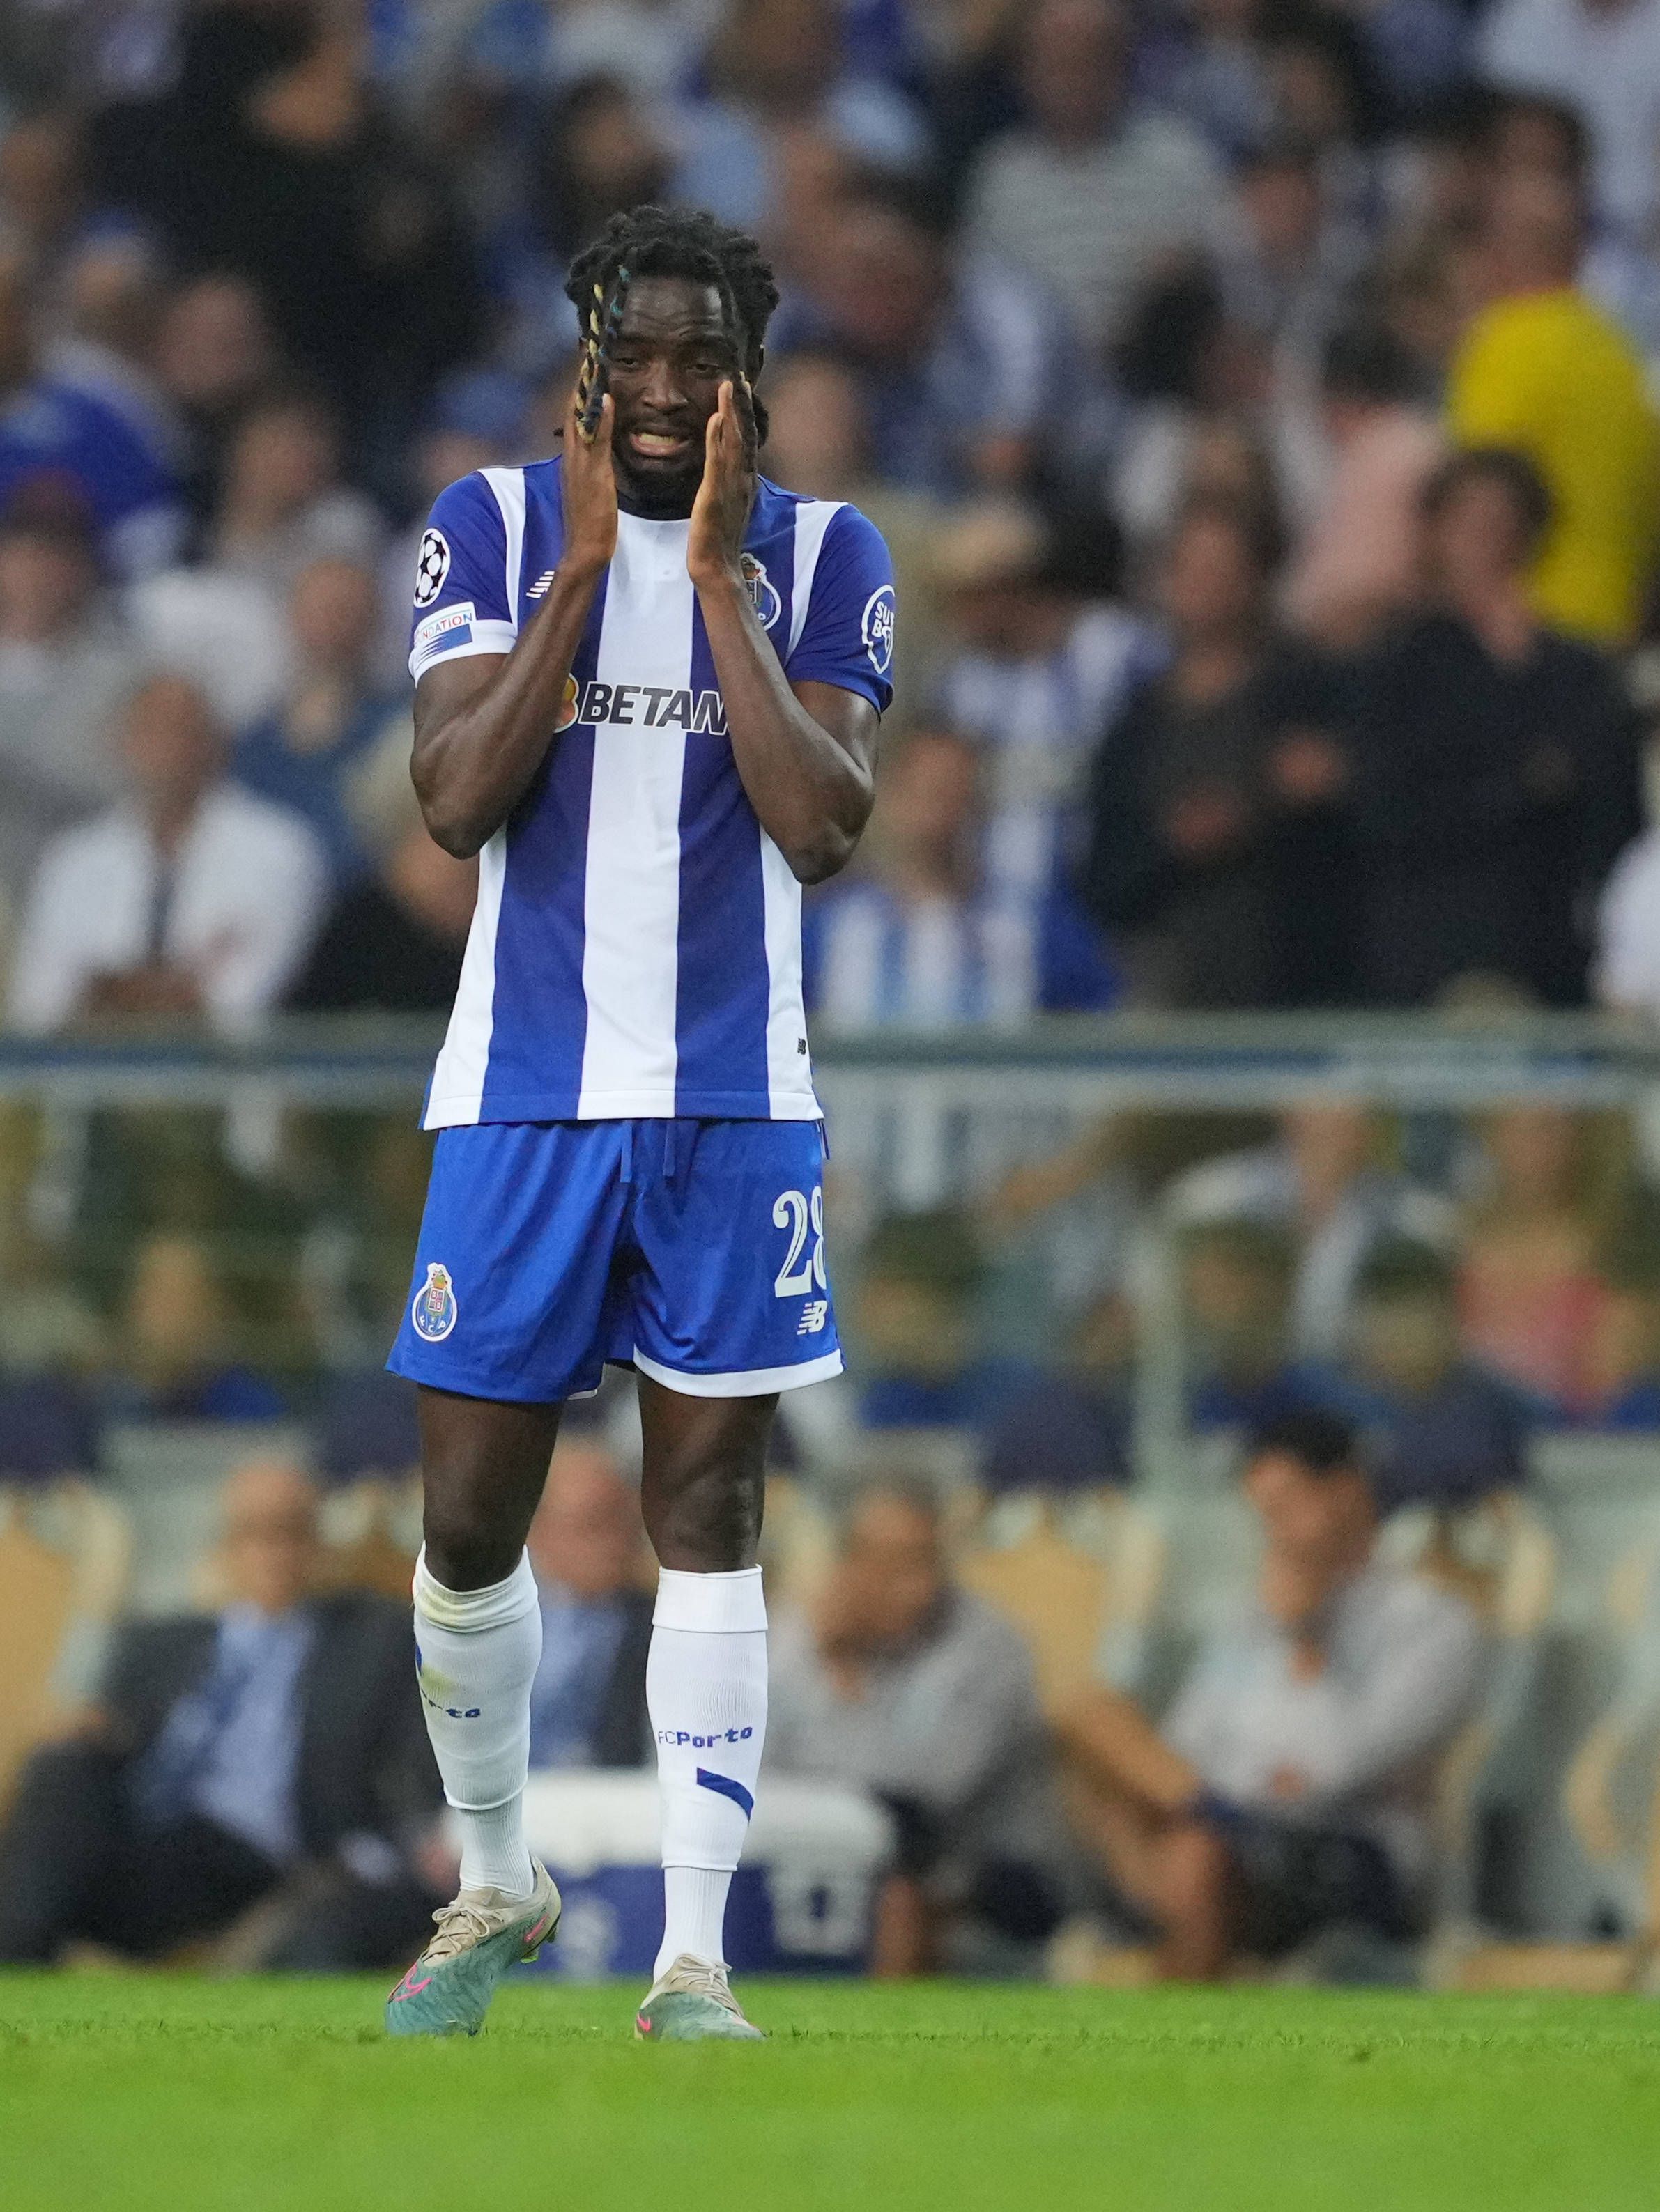 Empate resolve o campeonato, os dez pontos obrigam o FC Porto a